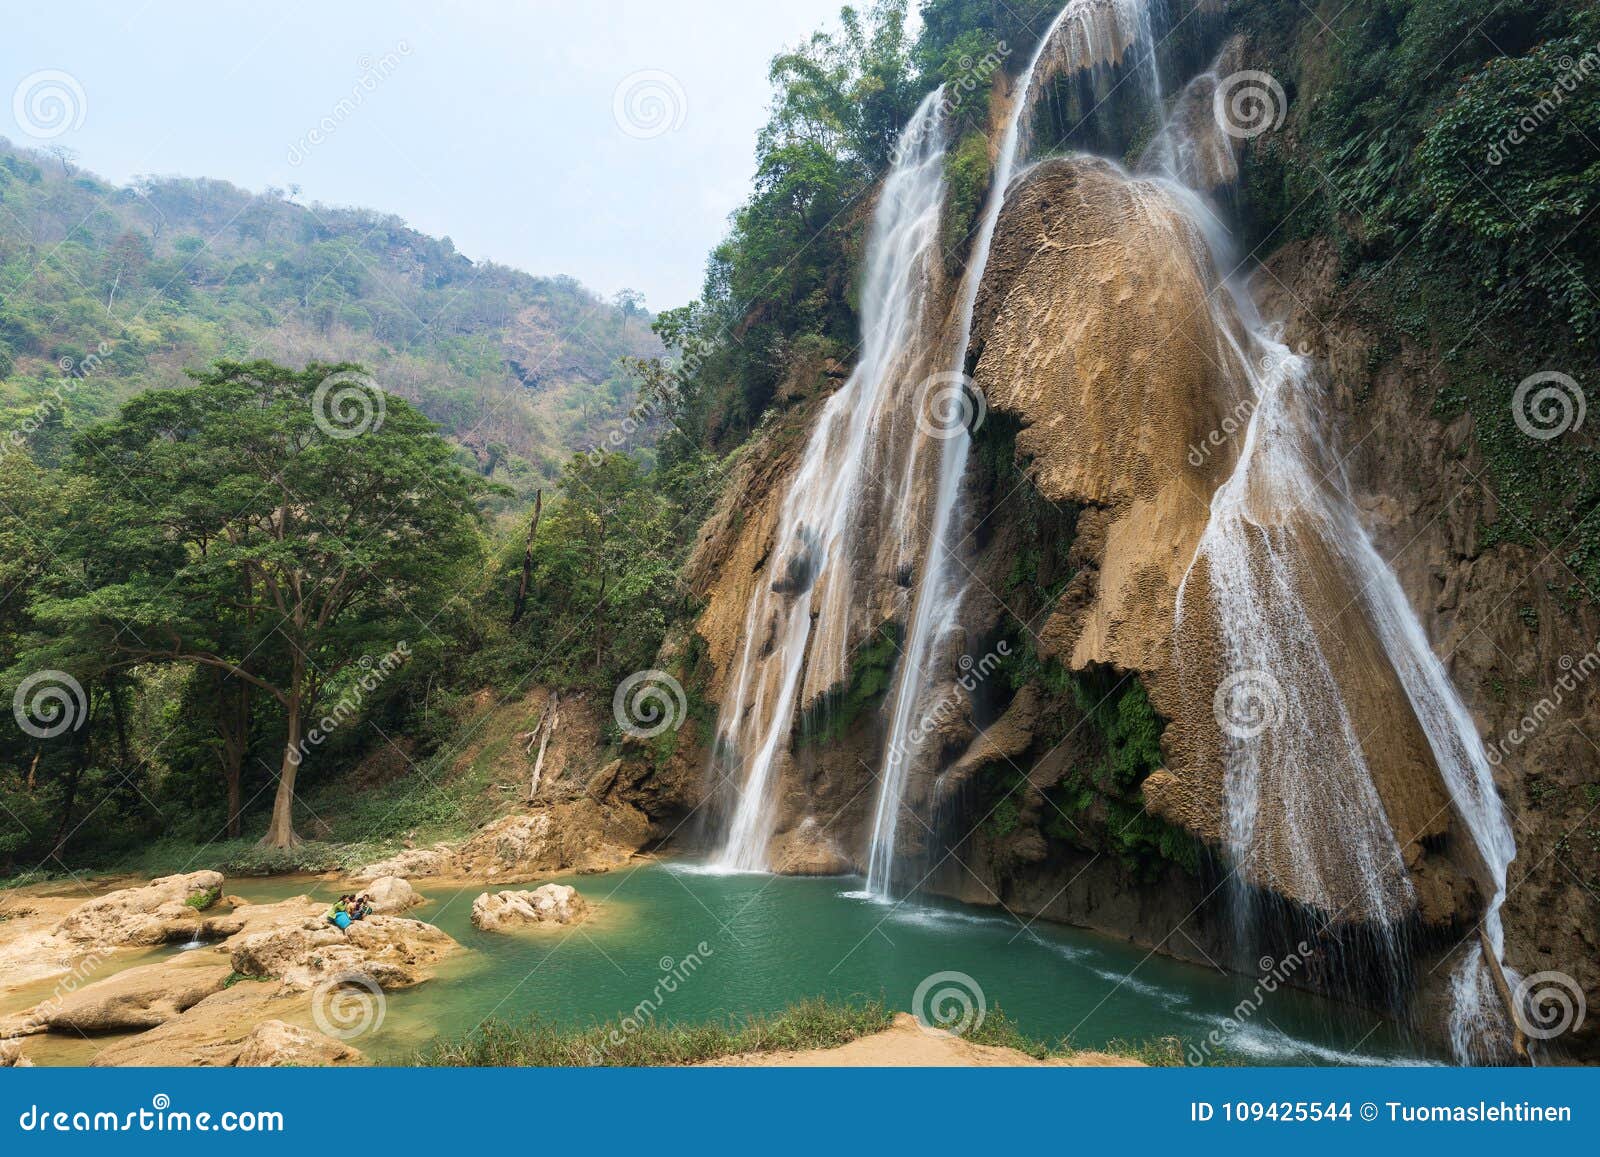 dat taw gyaint waterfall in myanmar